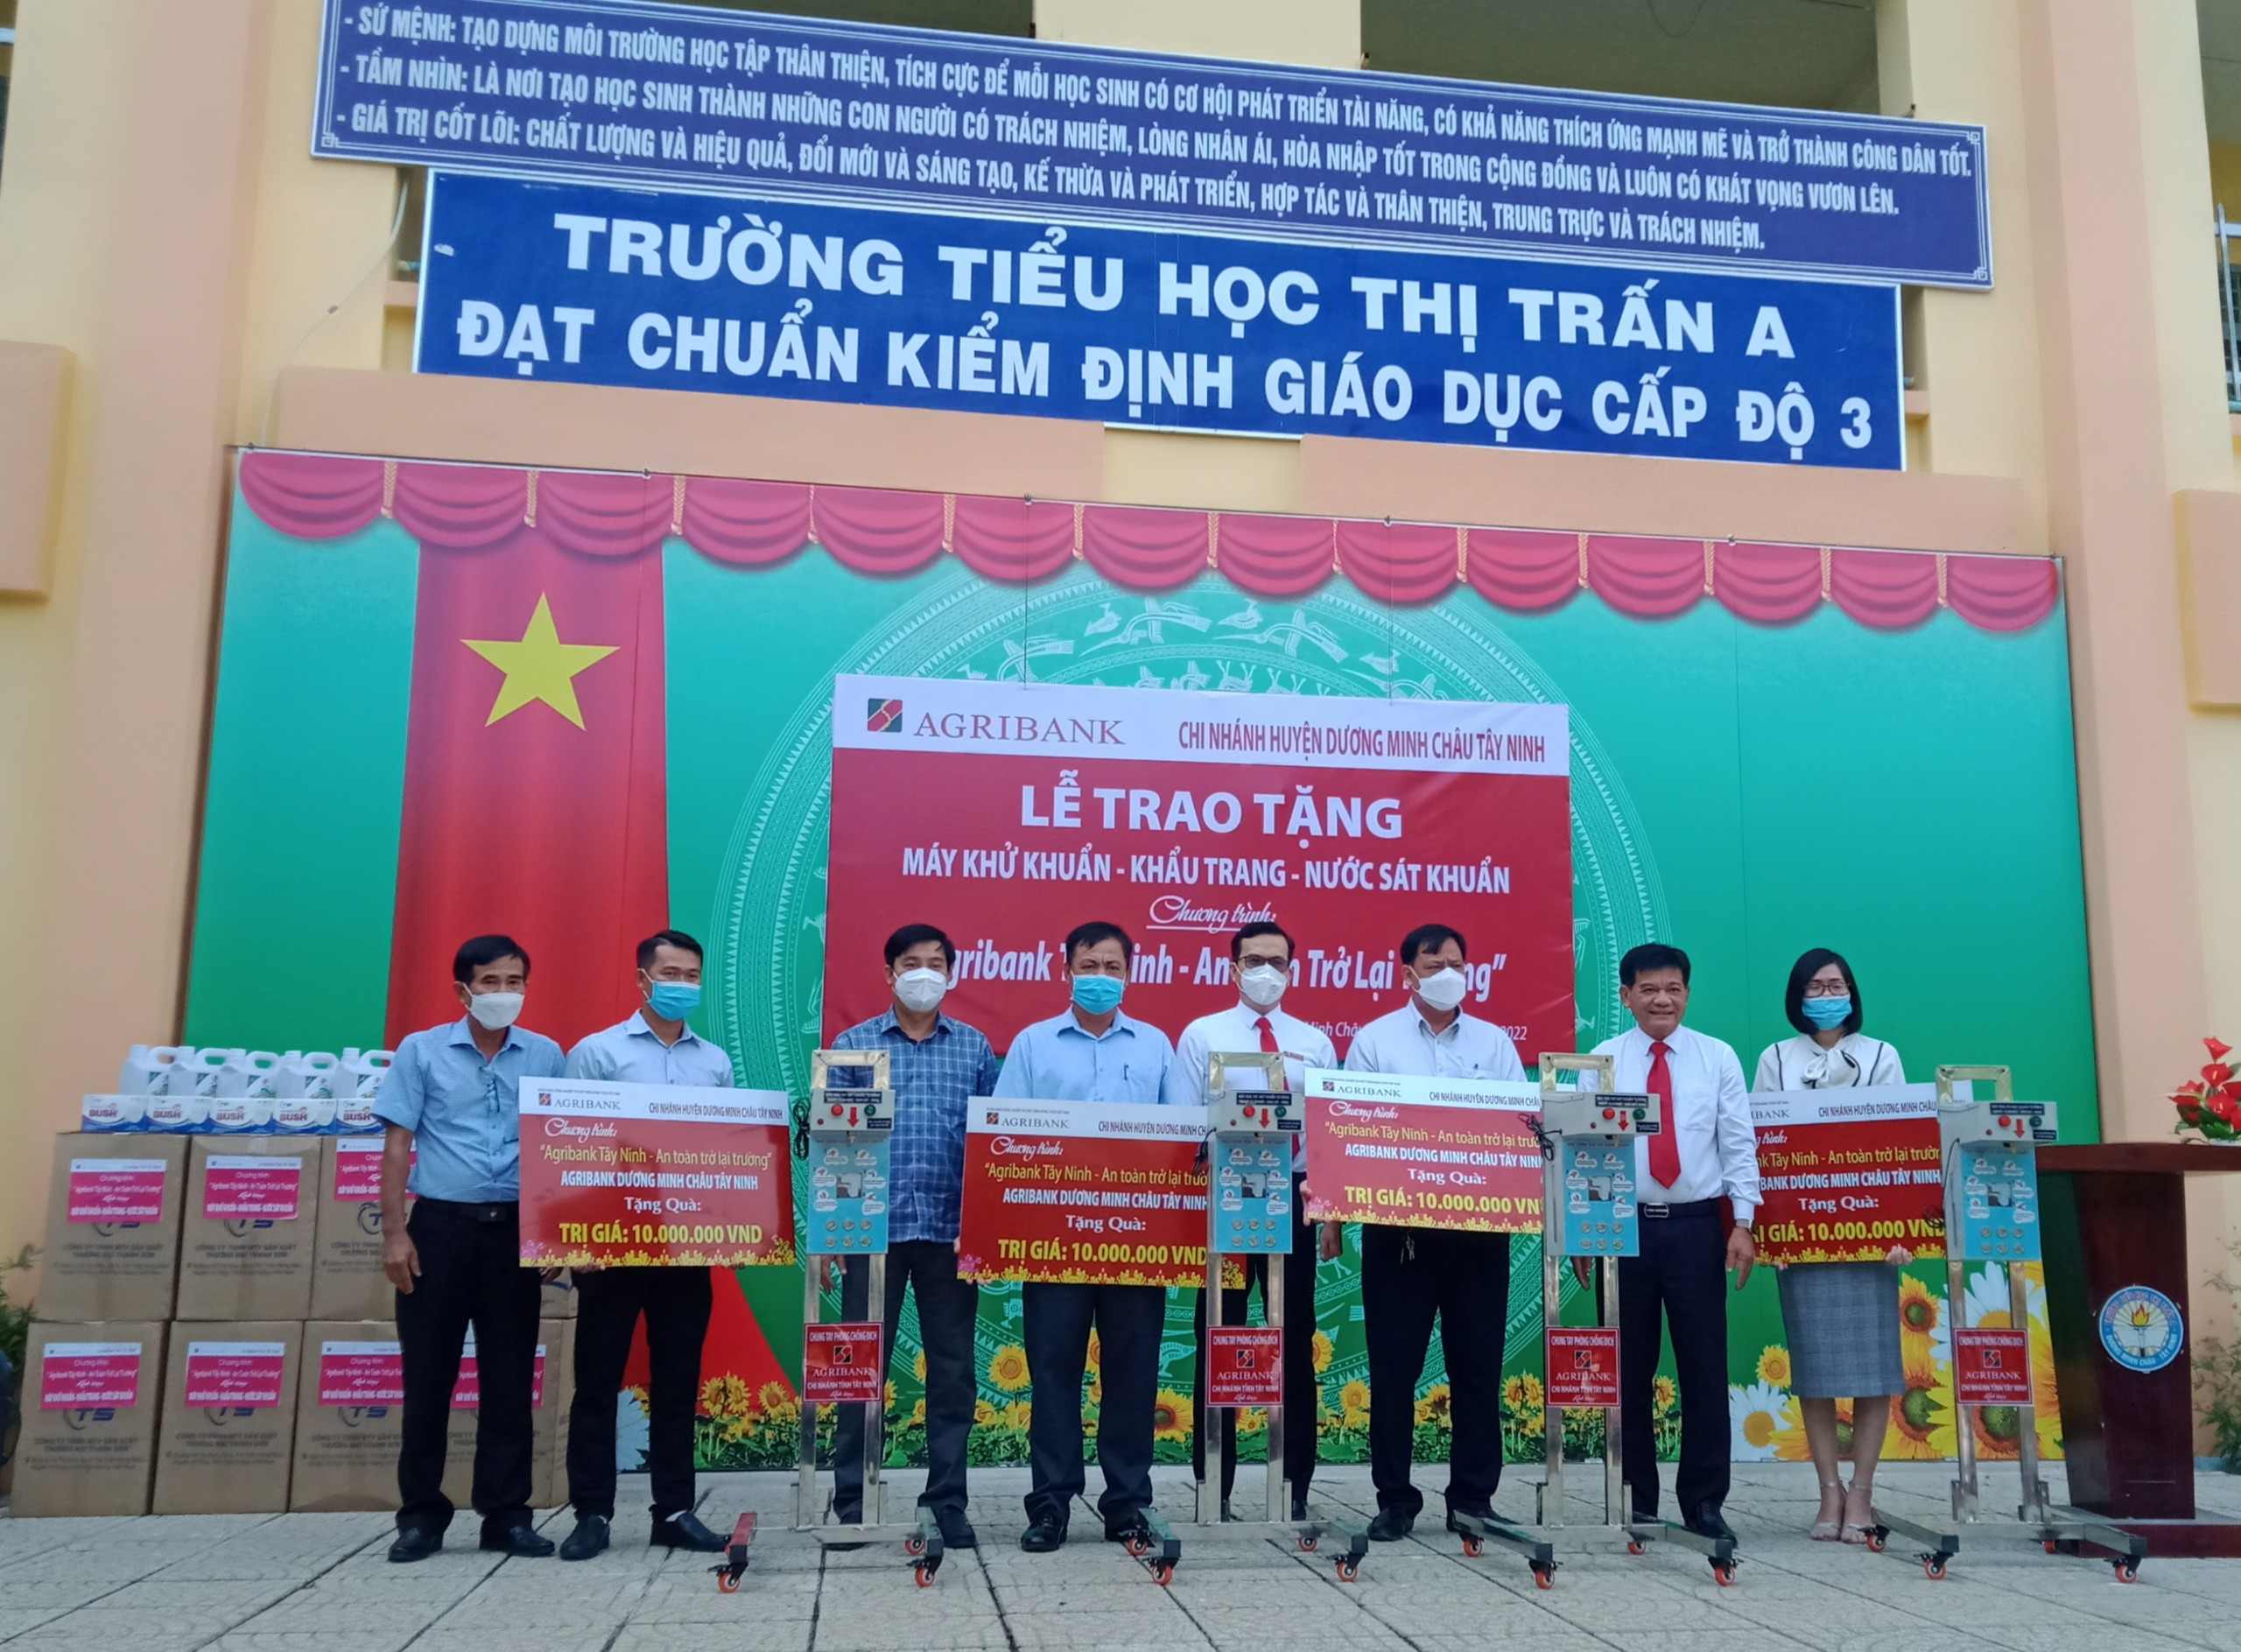 Chương trình: Agribank Tây Ninh – An toàn trở lại trường